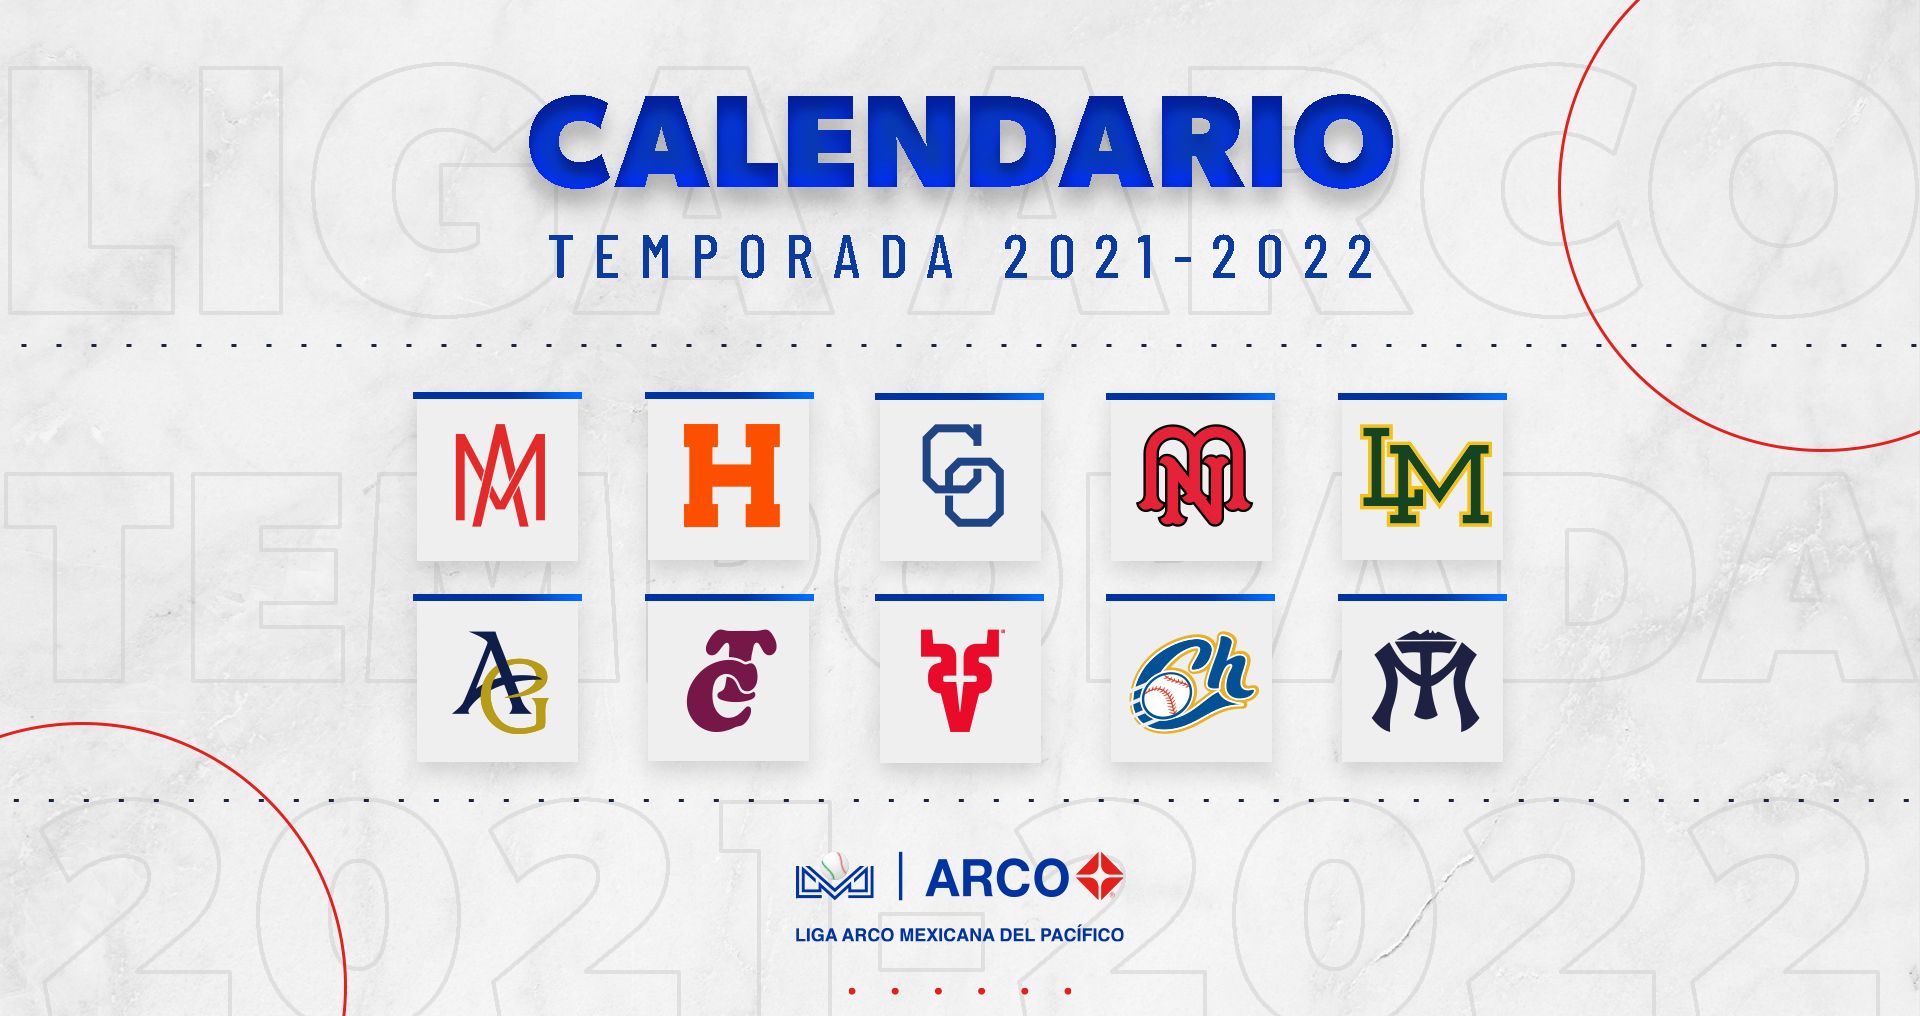 CALENDARIO OFICIAL PARA LA TEMPORADA 2021-2022 DE LA LIGA ARCO MEXICANA DEL PACÍFICO